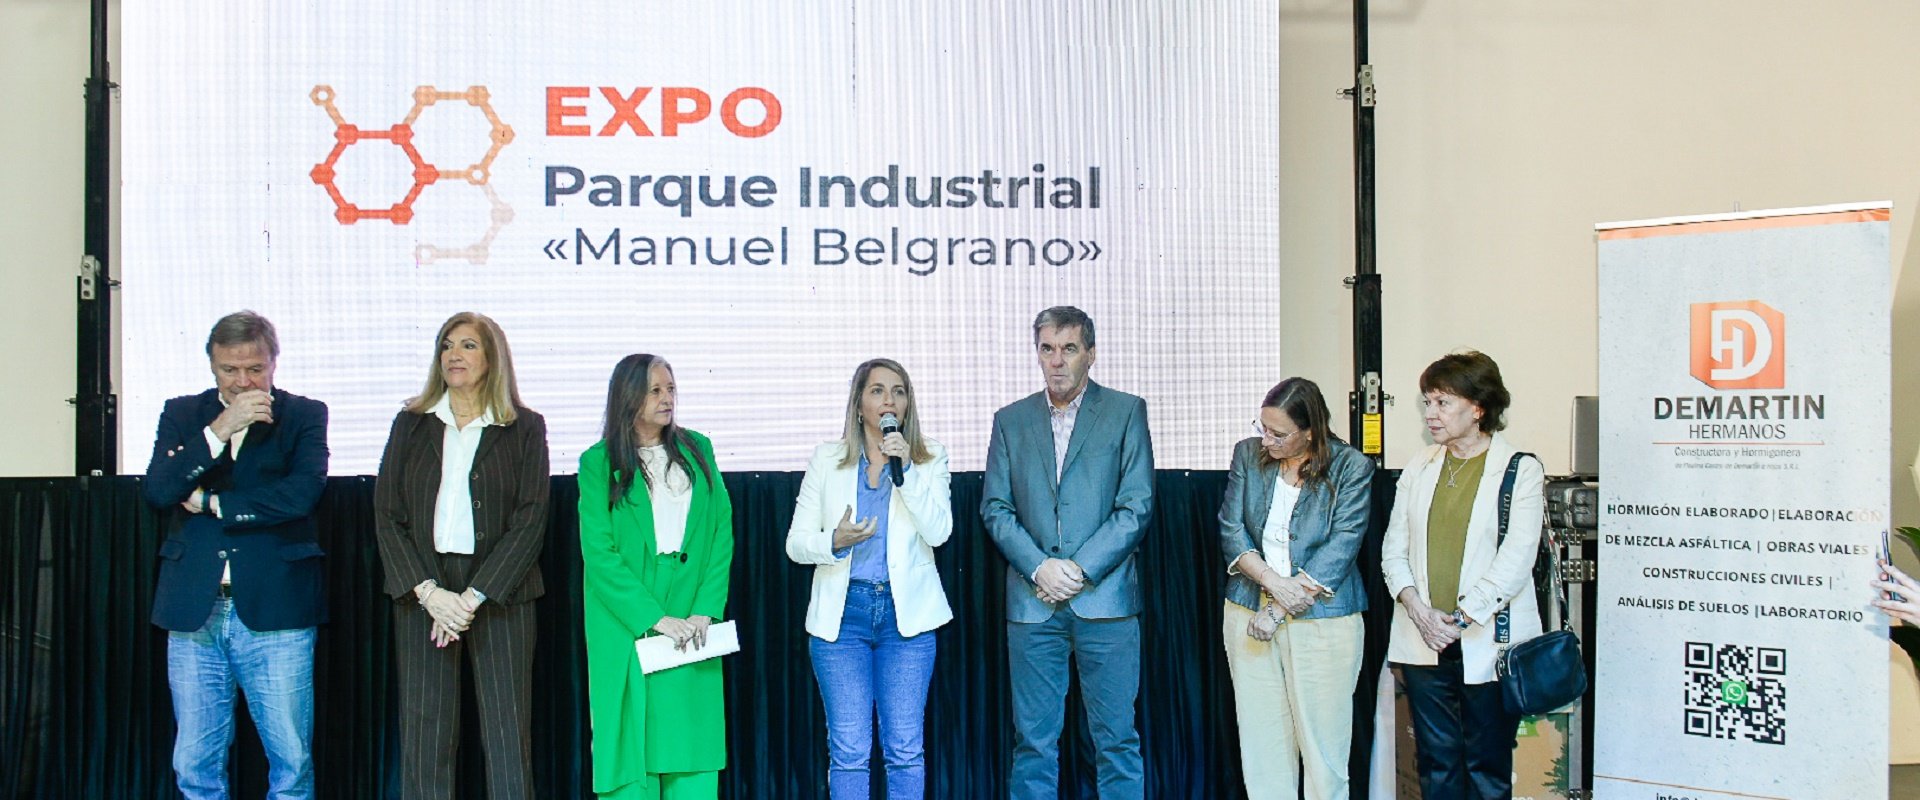 Se inauguró la Expo Parque Industrial